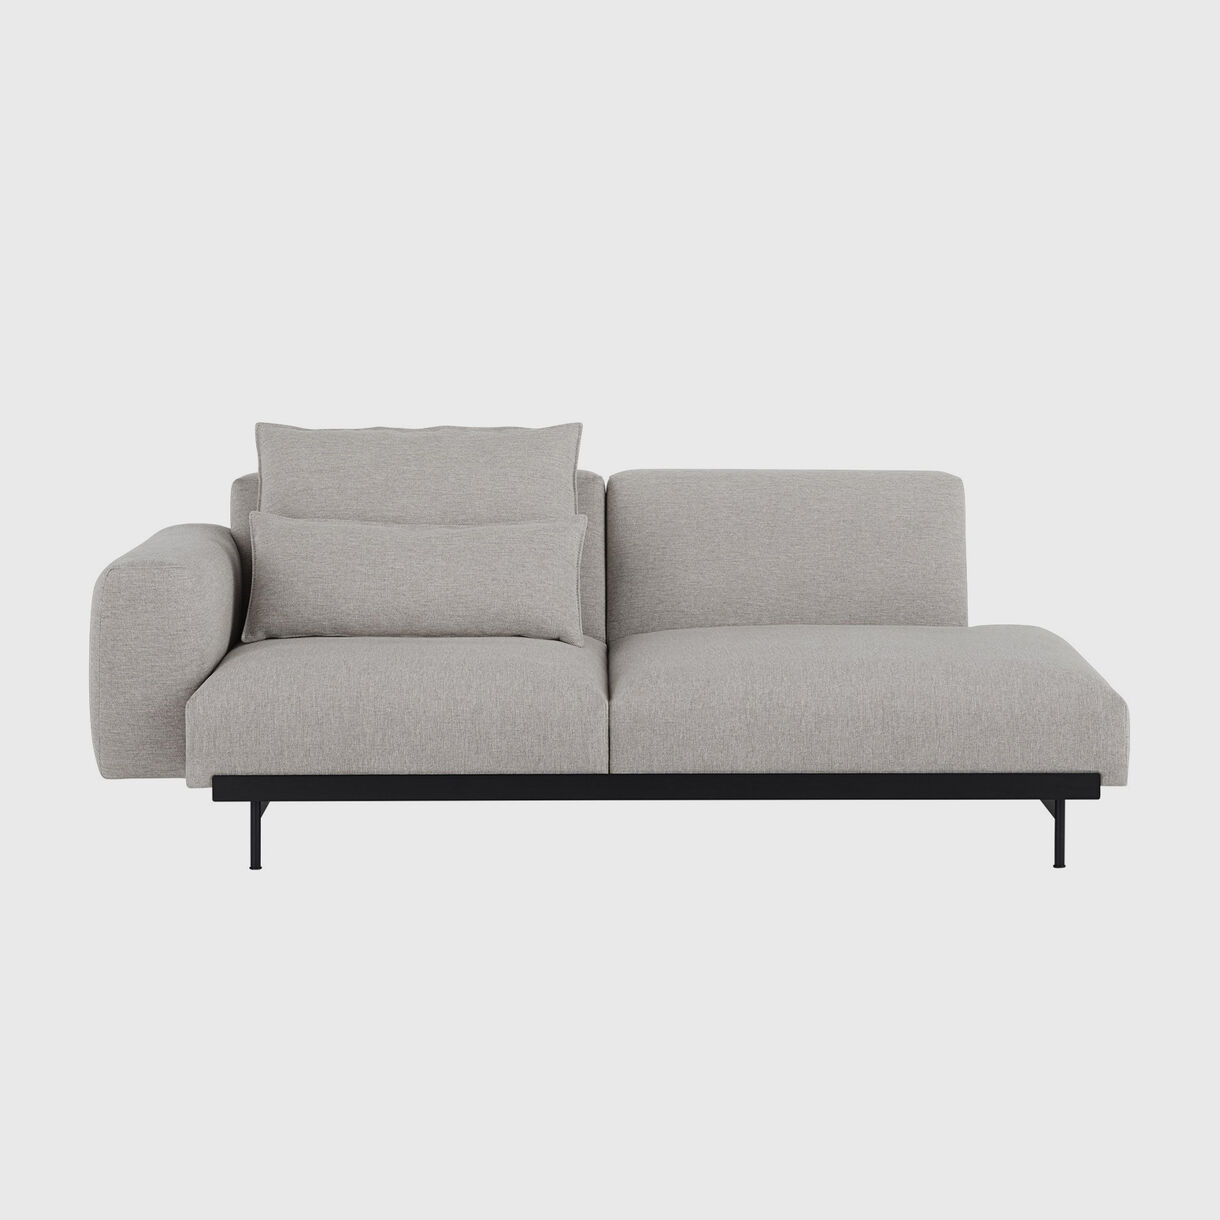 In Situ 2 Seater Sofa, Configuration 3, Clay 12